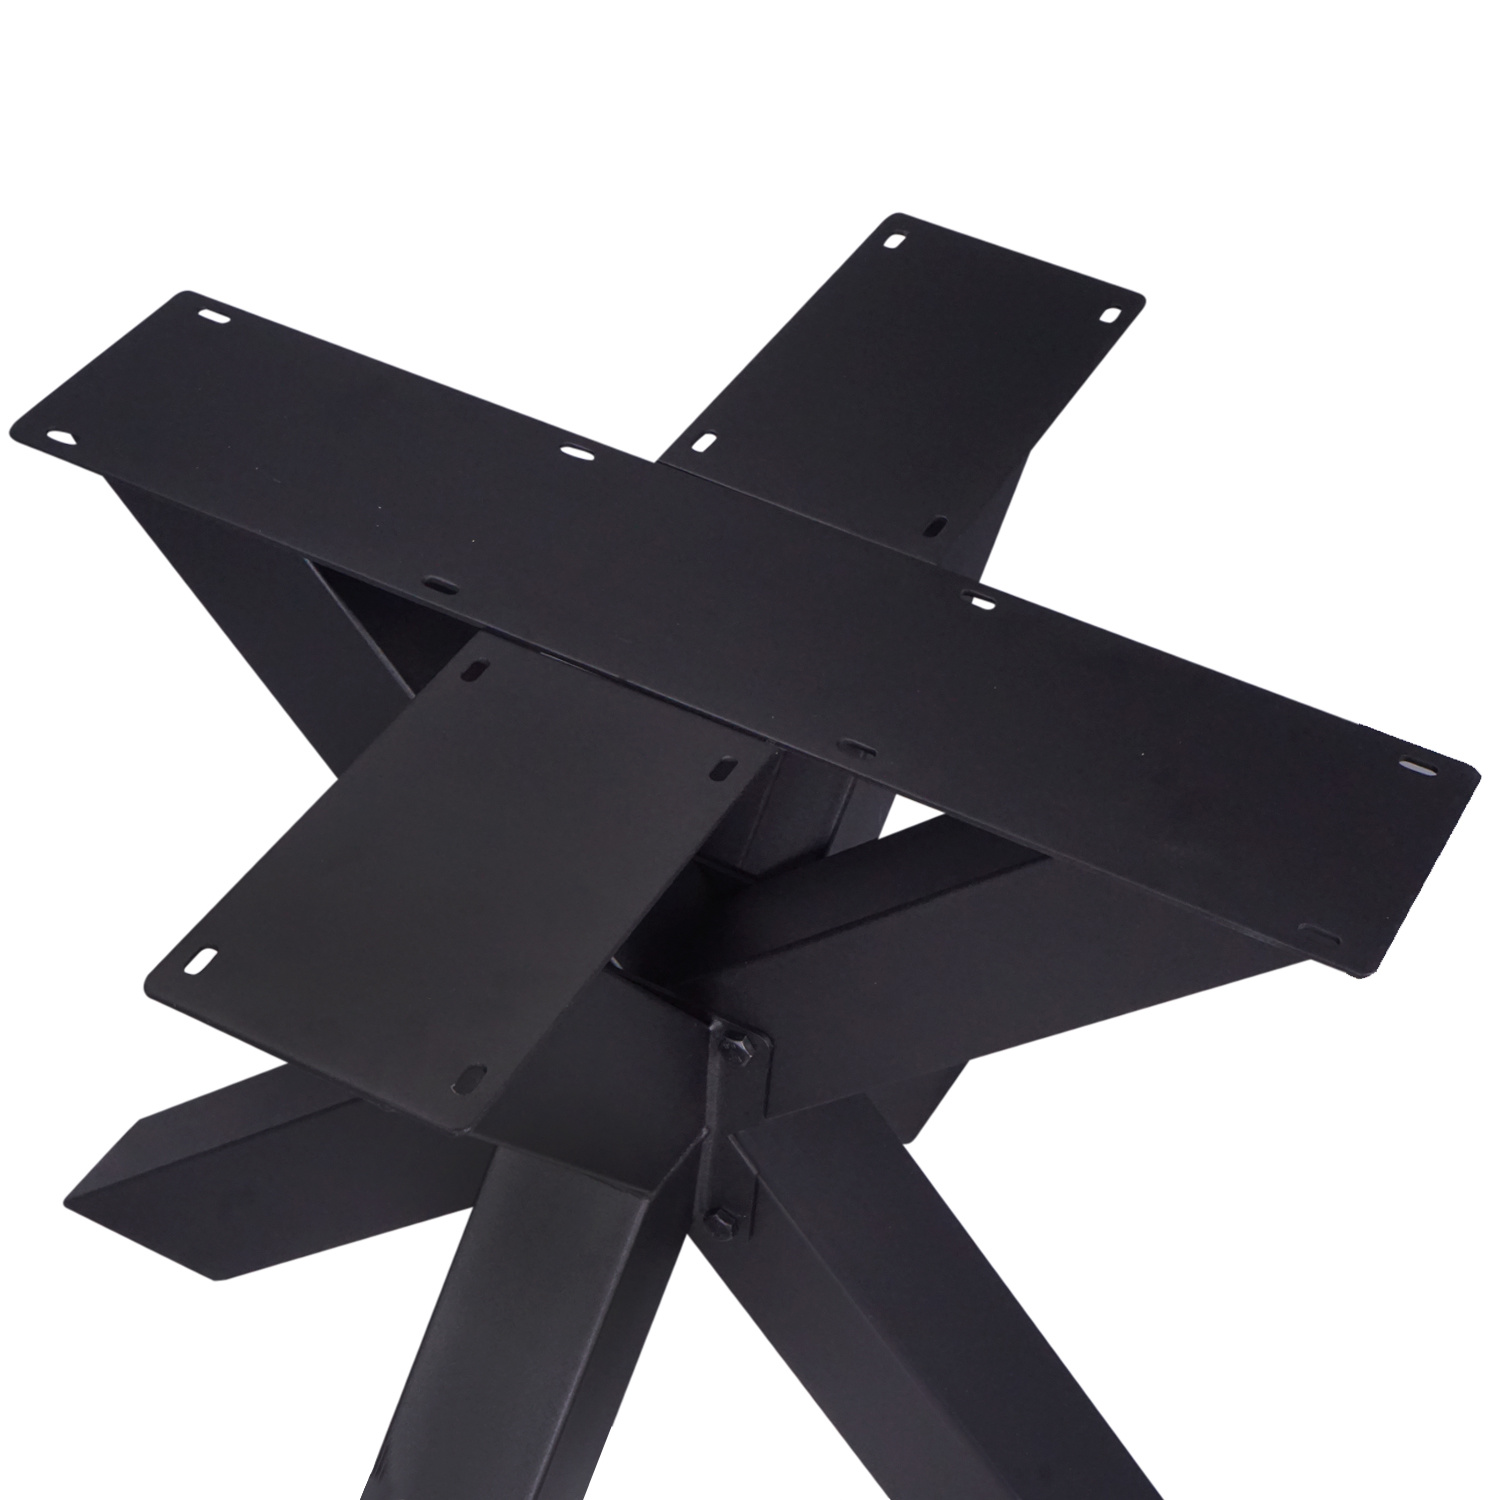  Stalen onderstel Dubbele X (3D) - 3-DELIG met schroefbevestiging - 10x10 cm - 90x90 cm - 72 cm hoog - 3D dubbele kruispoot - zwarte poedercoating